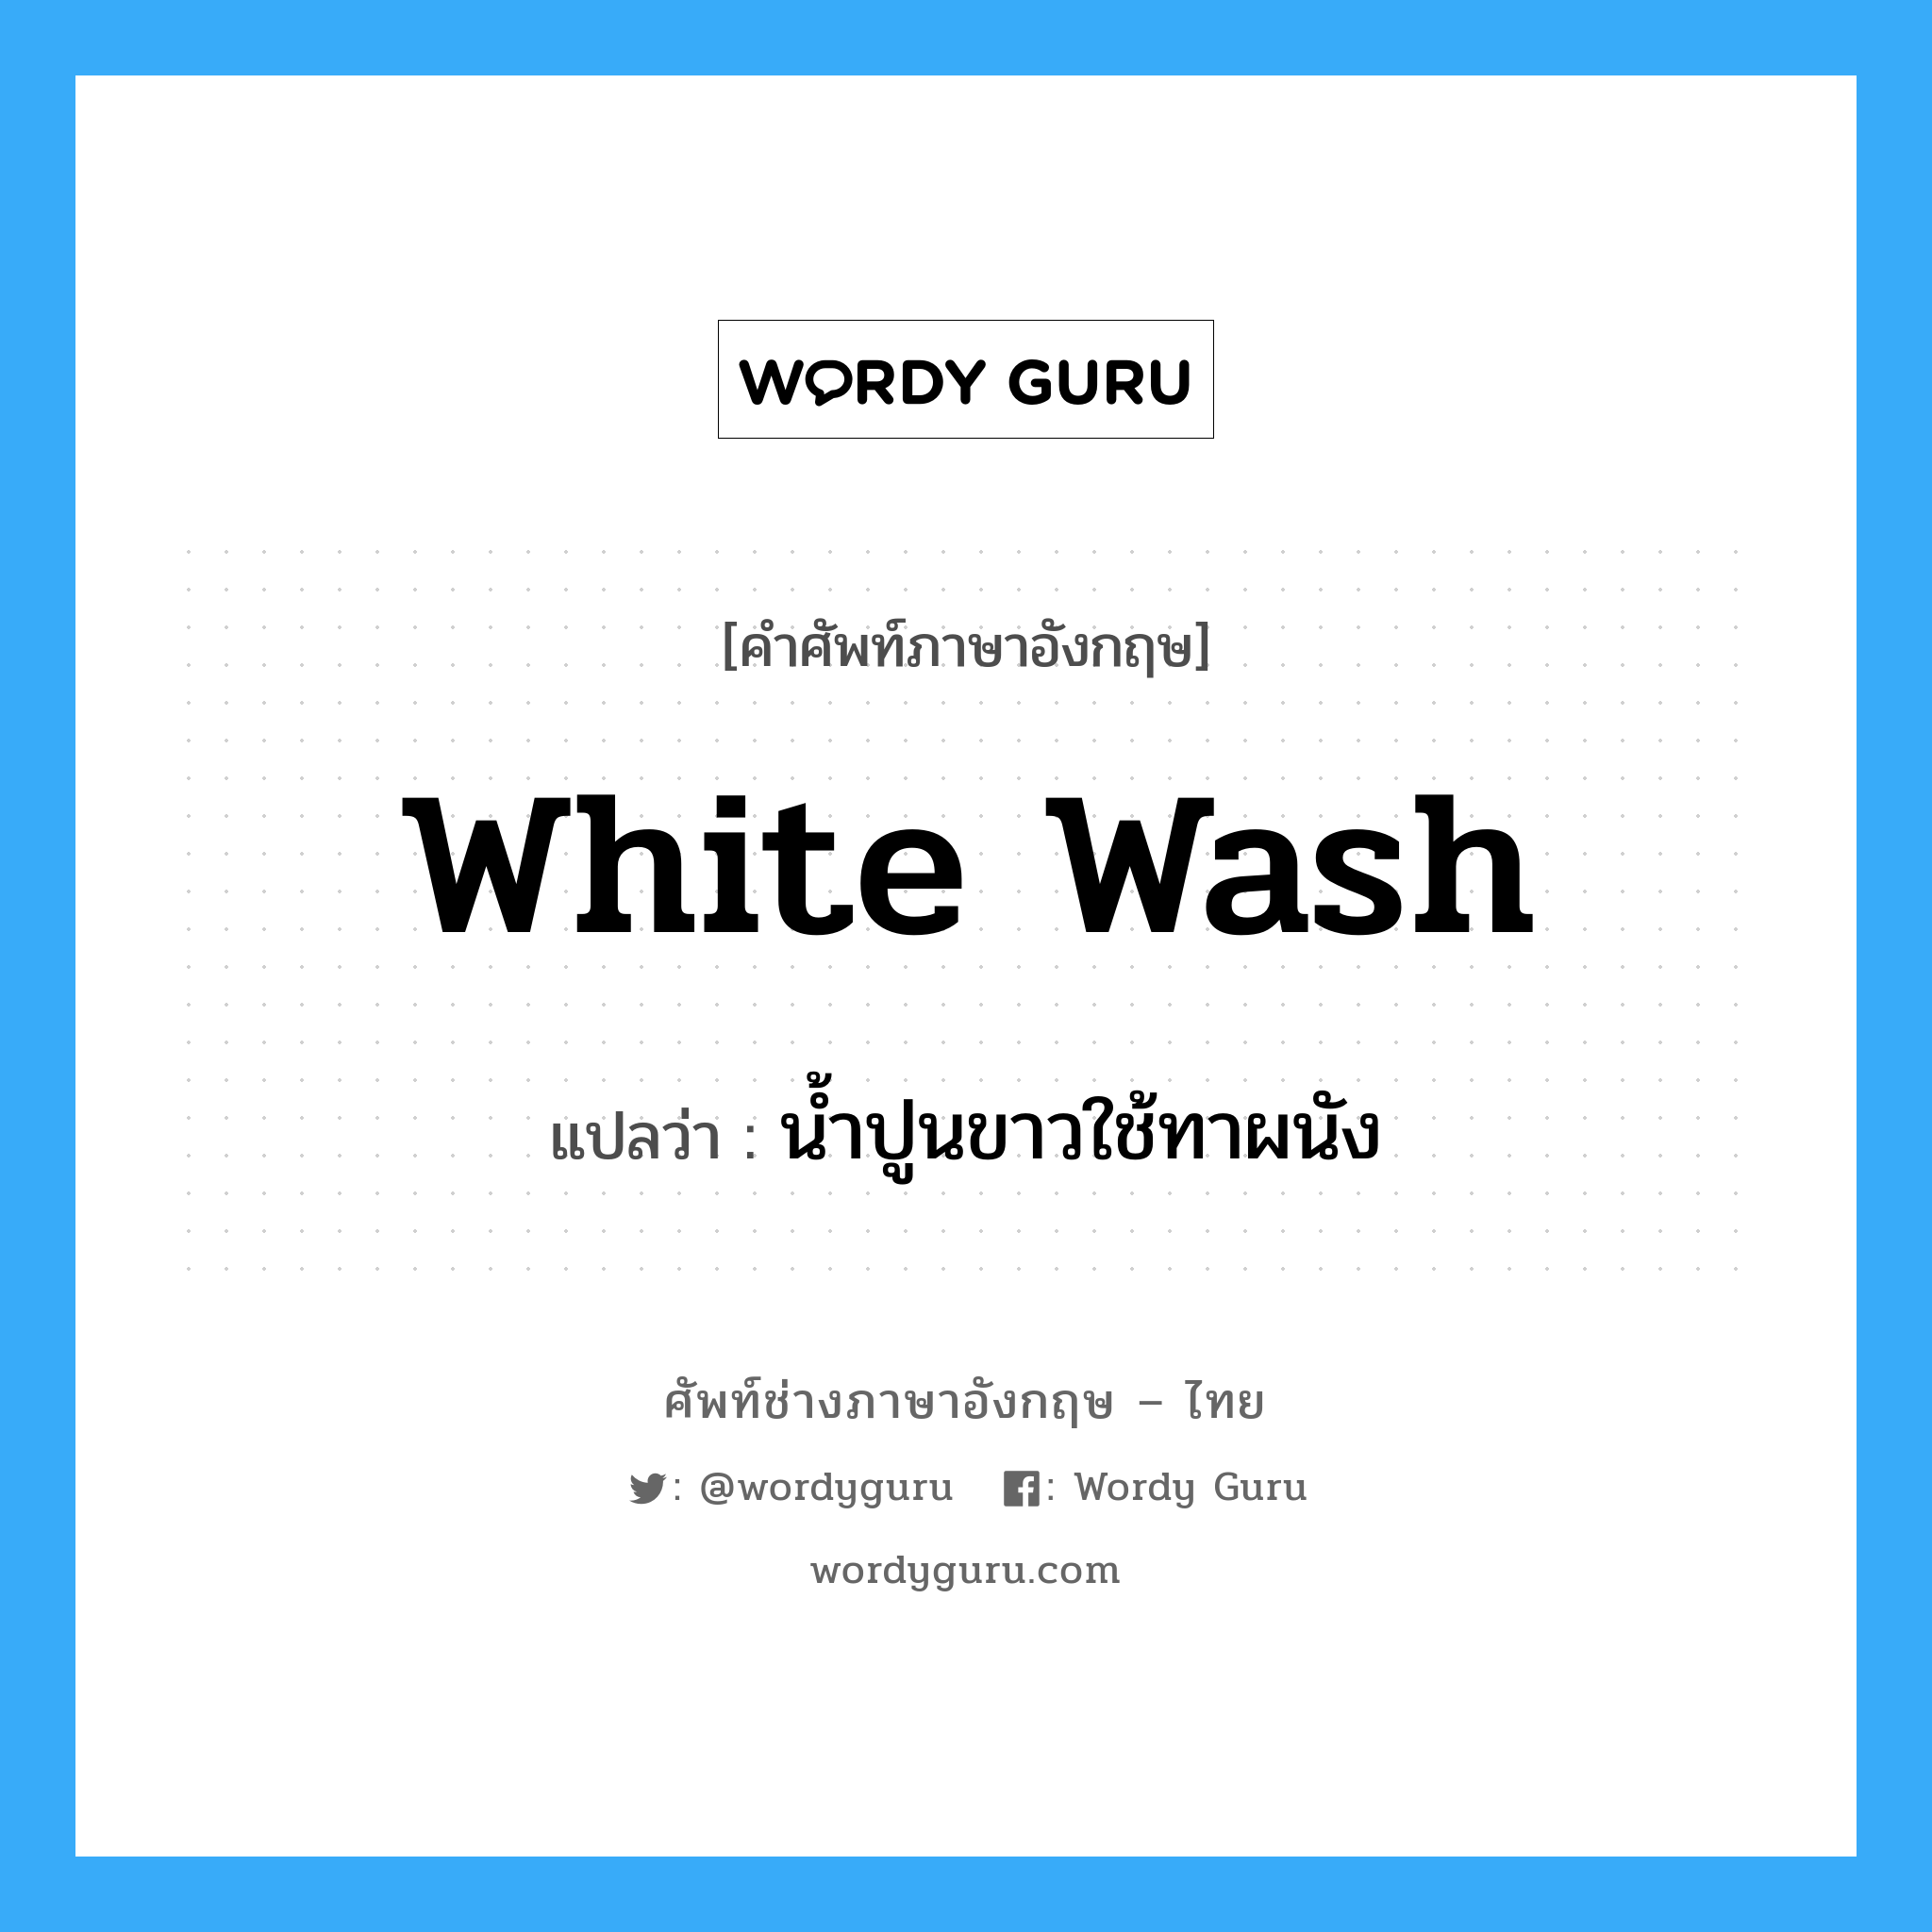 น้ำปูนขาวใช้ทาผนัง ภาษาอังกฤษ?, คำศัพท์ช่างภาษาอังกฤษ - ไทย น้ำปูนขาวใช้ทาผนัง คำศัพท์ภาษาอังกฤษ น้ำปูนขาวใช้ทาผนัง แปลว่า white wash